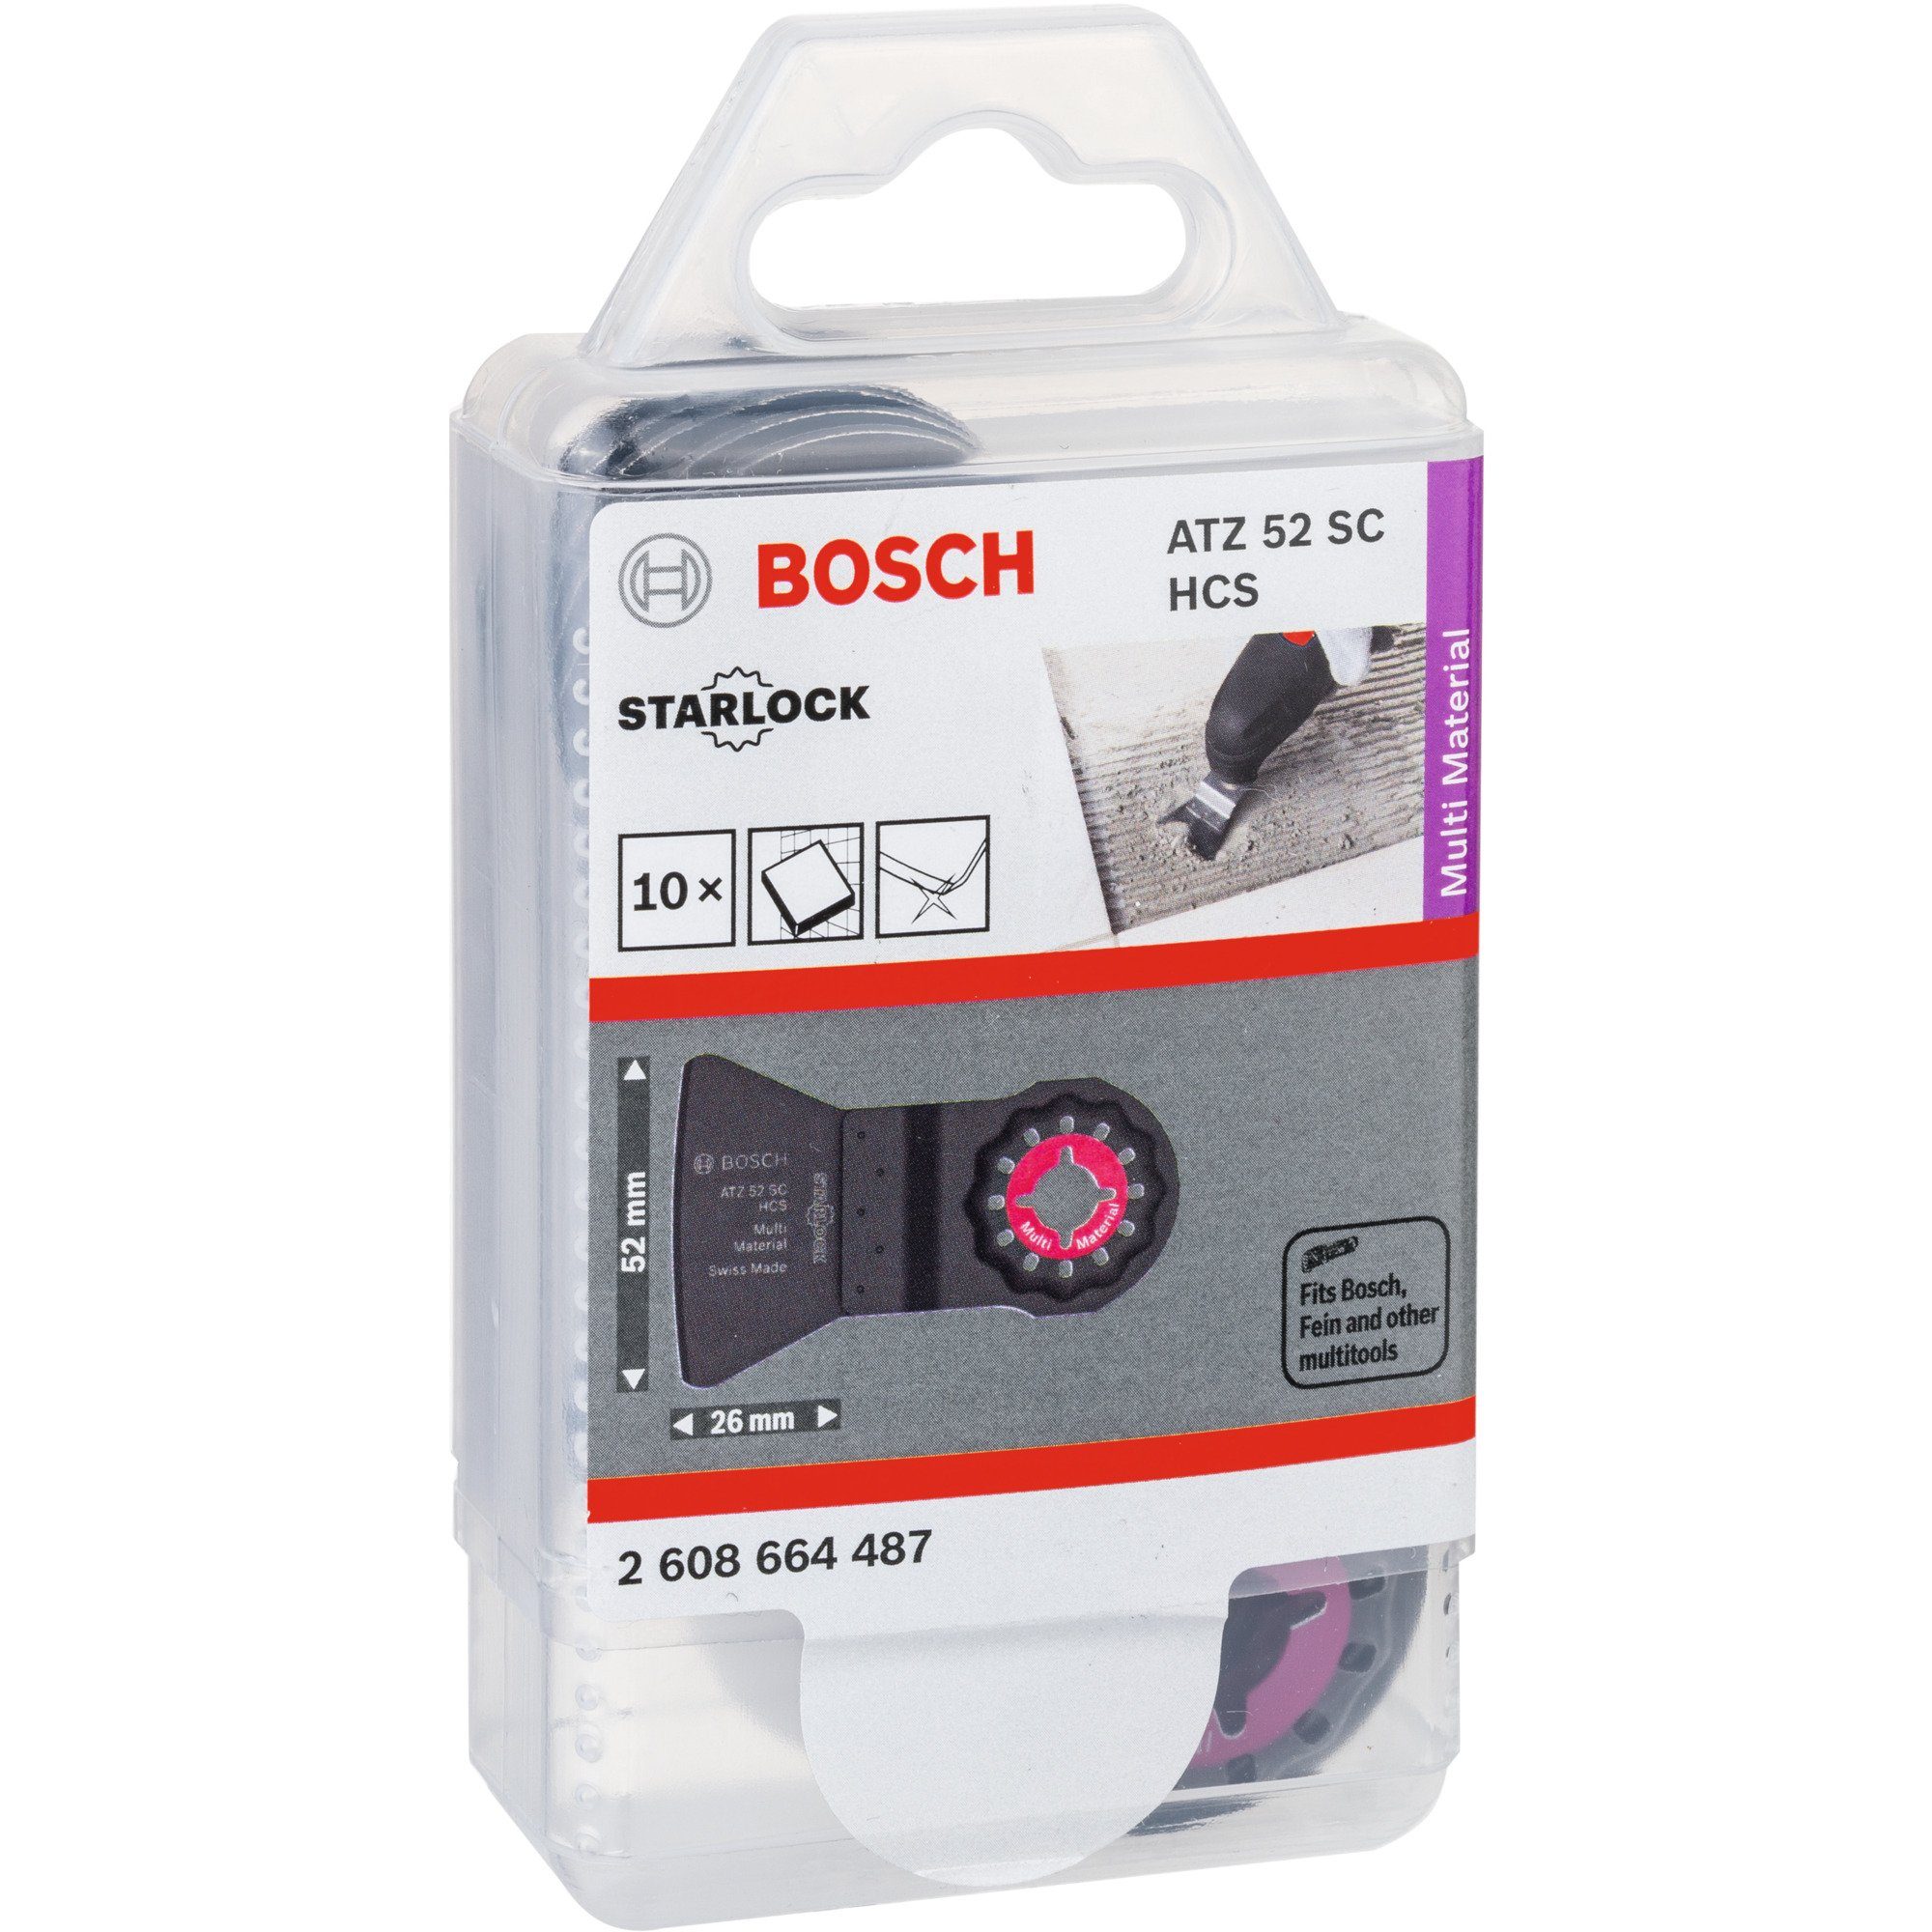 HCS 52 SC Bosch Professional ATZ (Kohlenstoffstahl) Schaber Material: Sägeblatt Multi, BOSCH